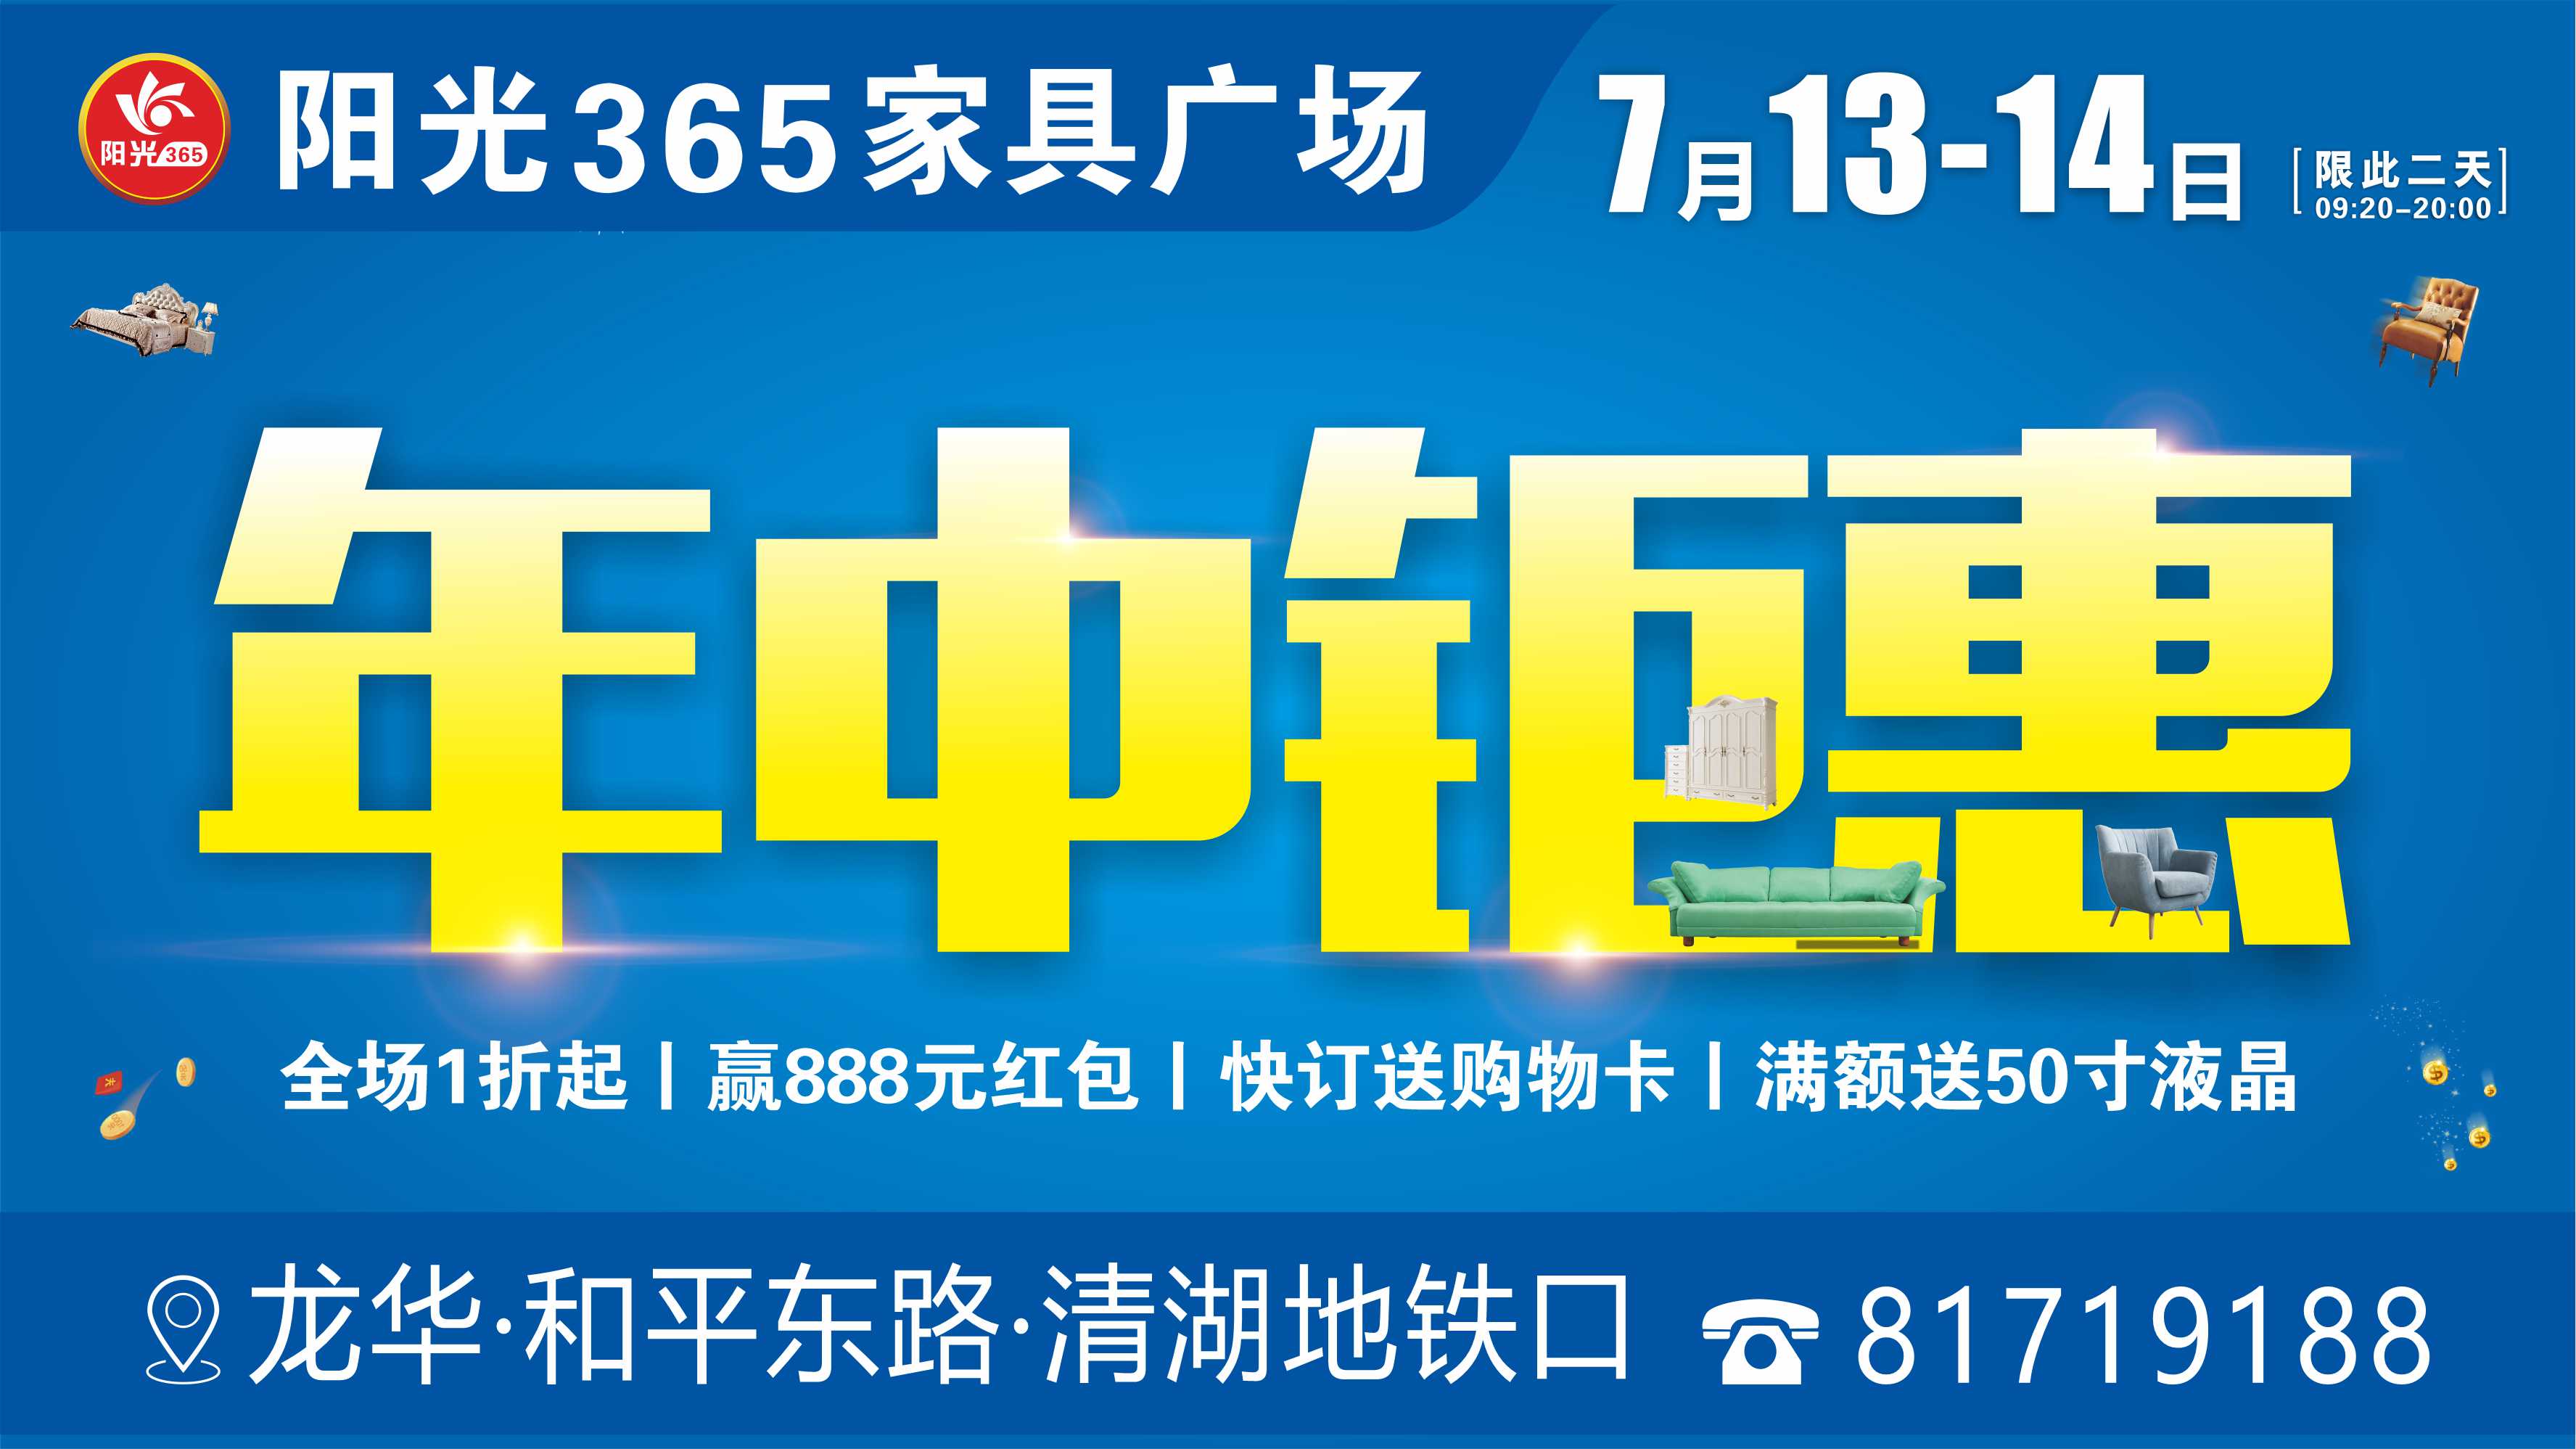 7月13-14日（共2天）龙华阳光365家具广场“年中钜惠”优惠